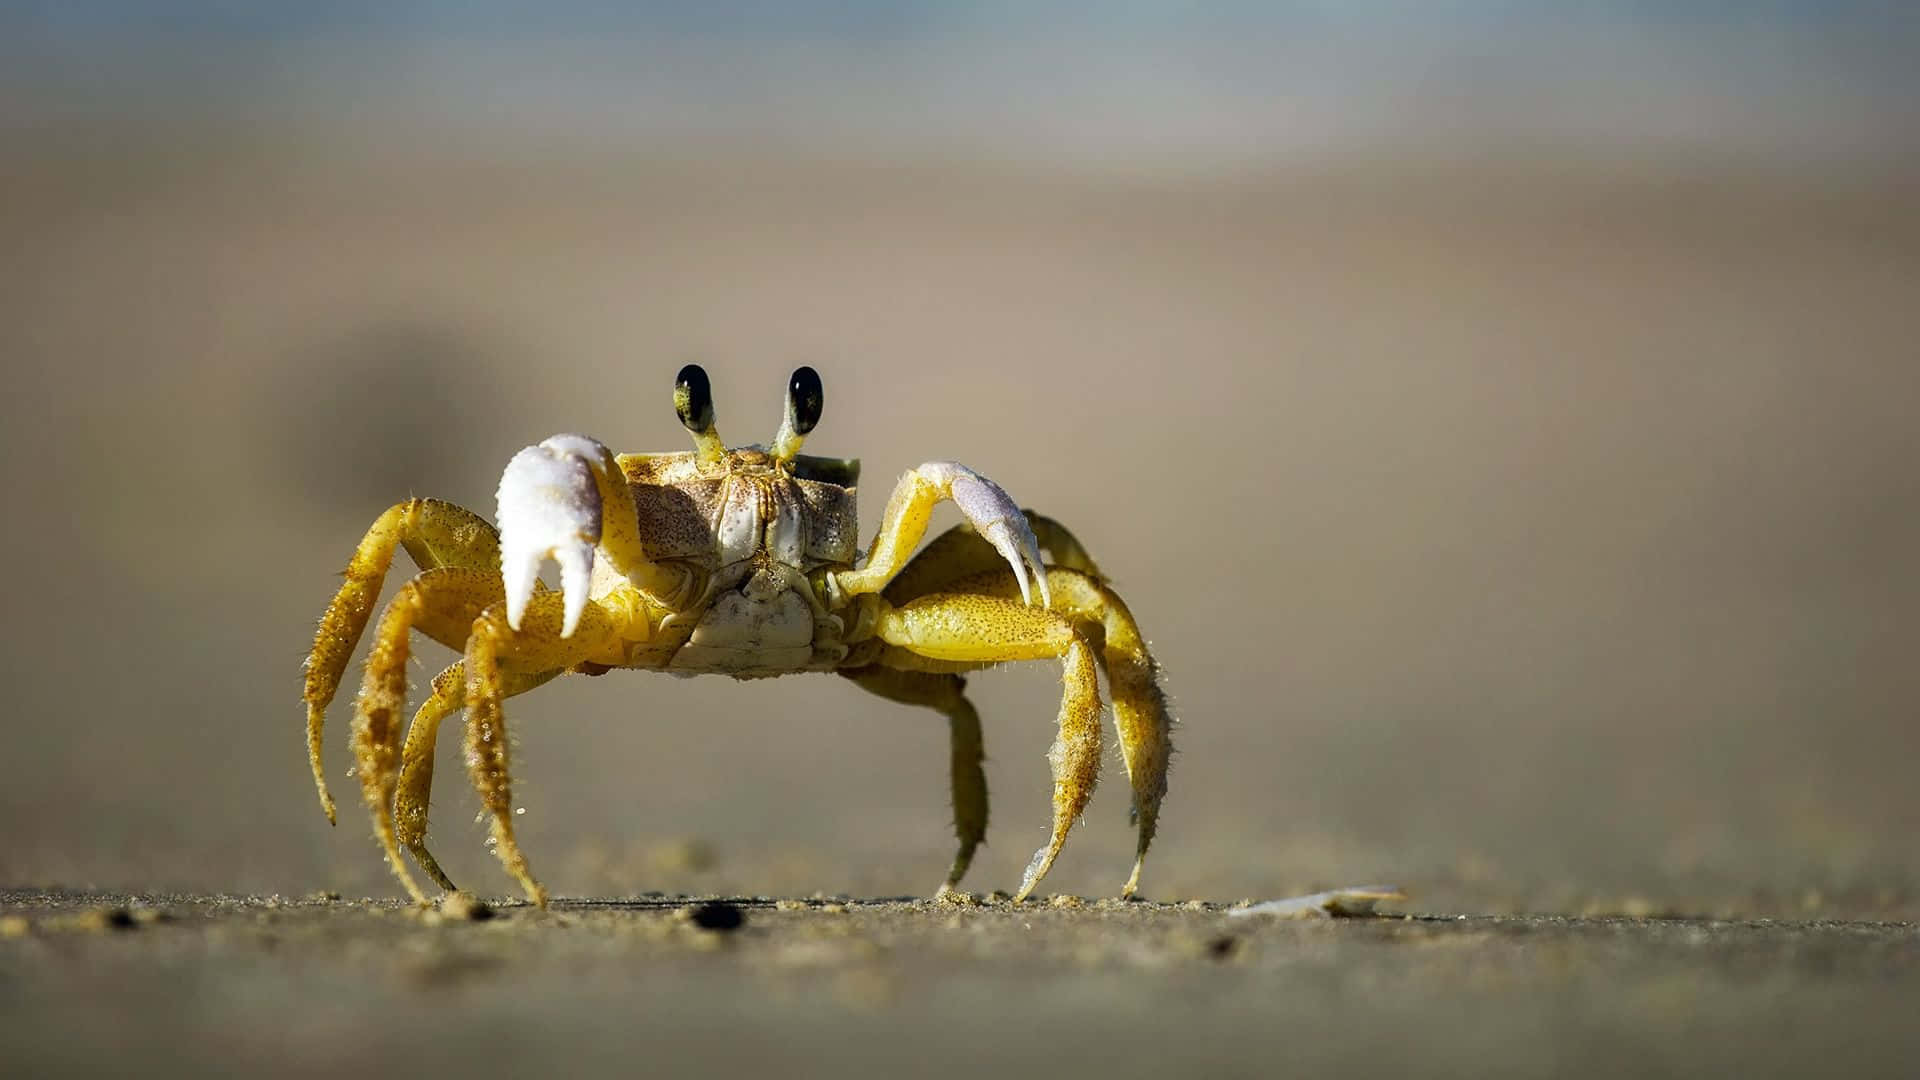 A juicy looking crab nestled in between rocks